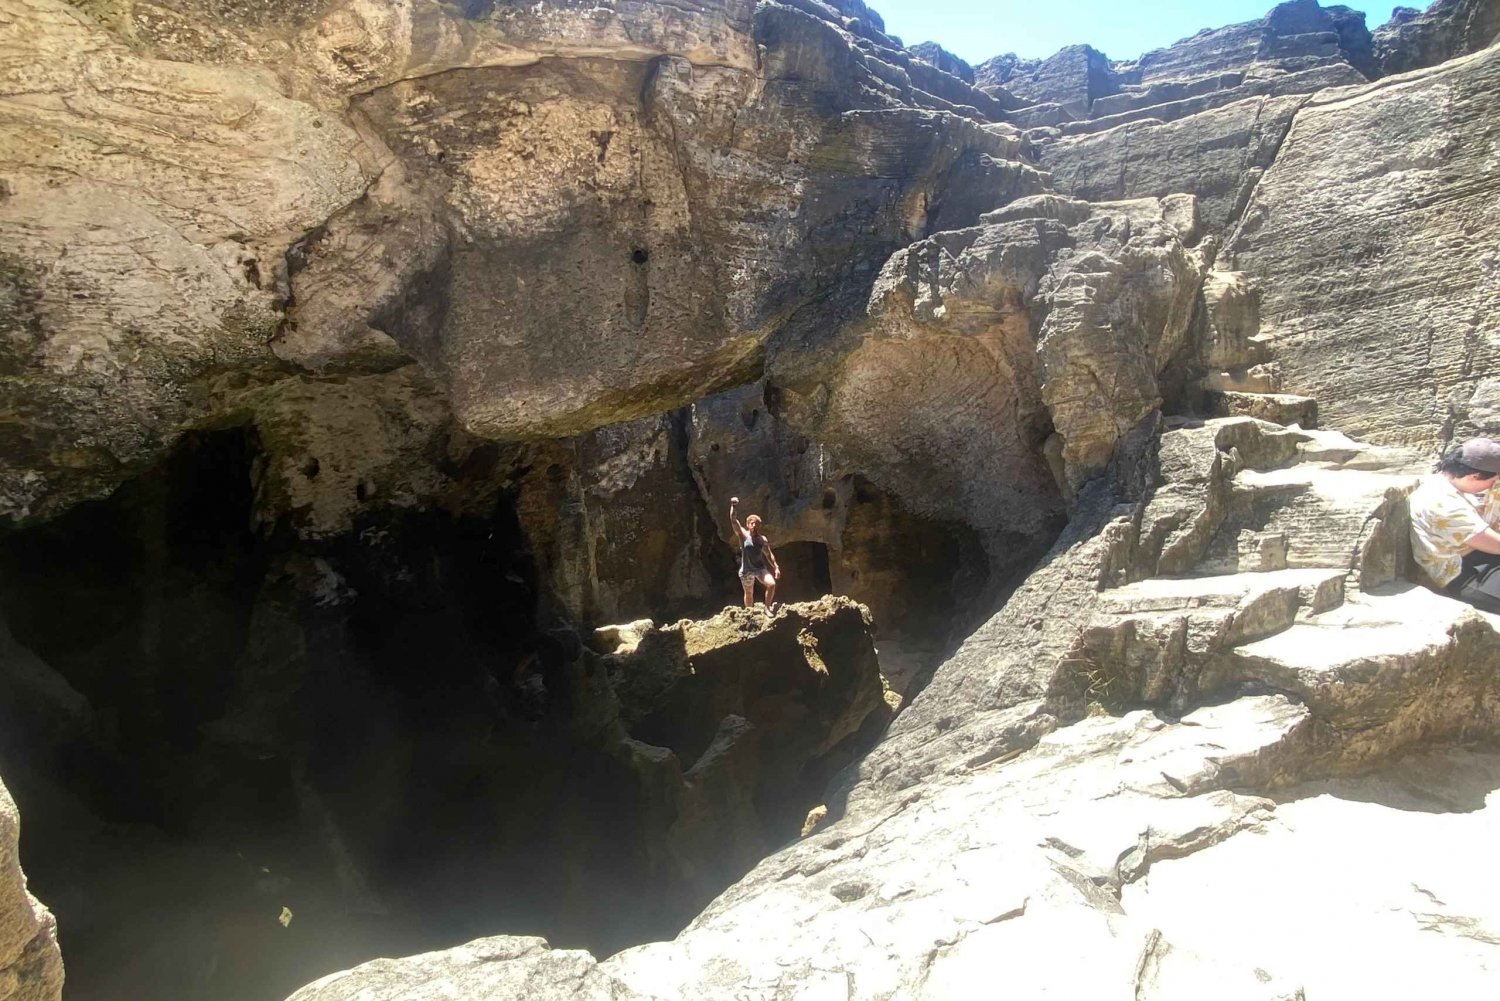 Portoryko: Taino i leśne jaskinie - przygoda z ukrytym wodospadem